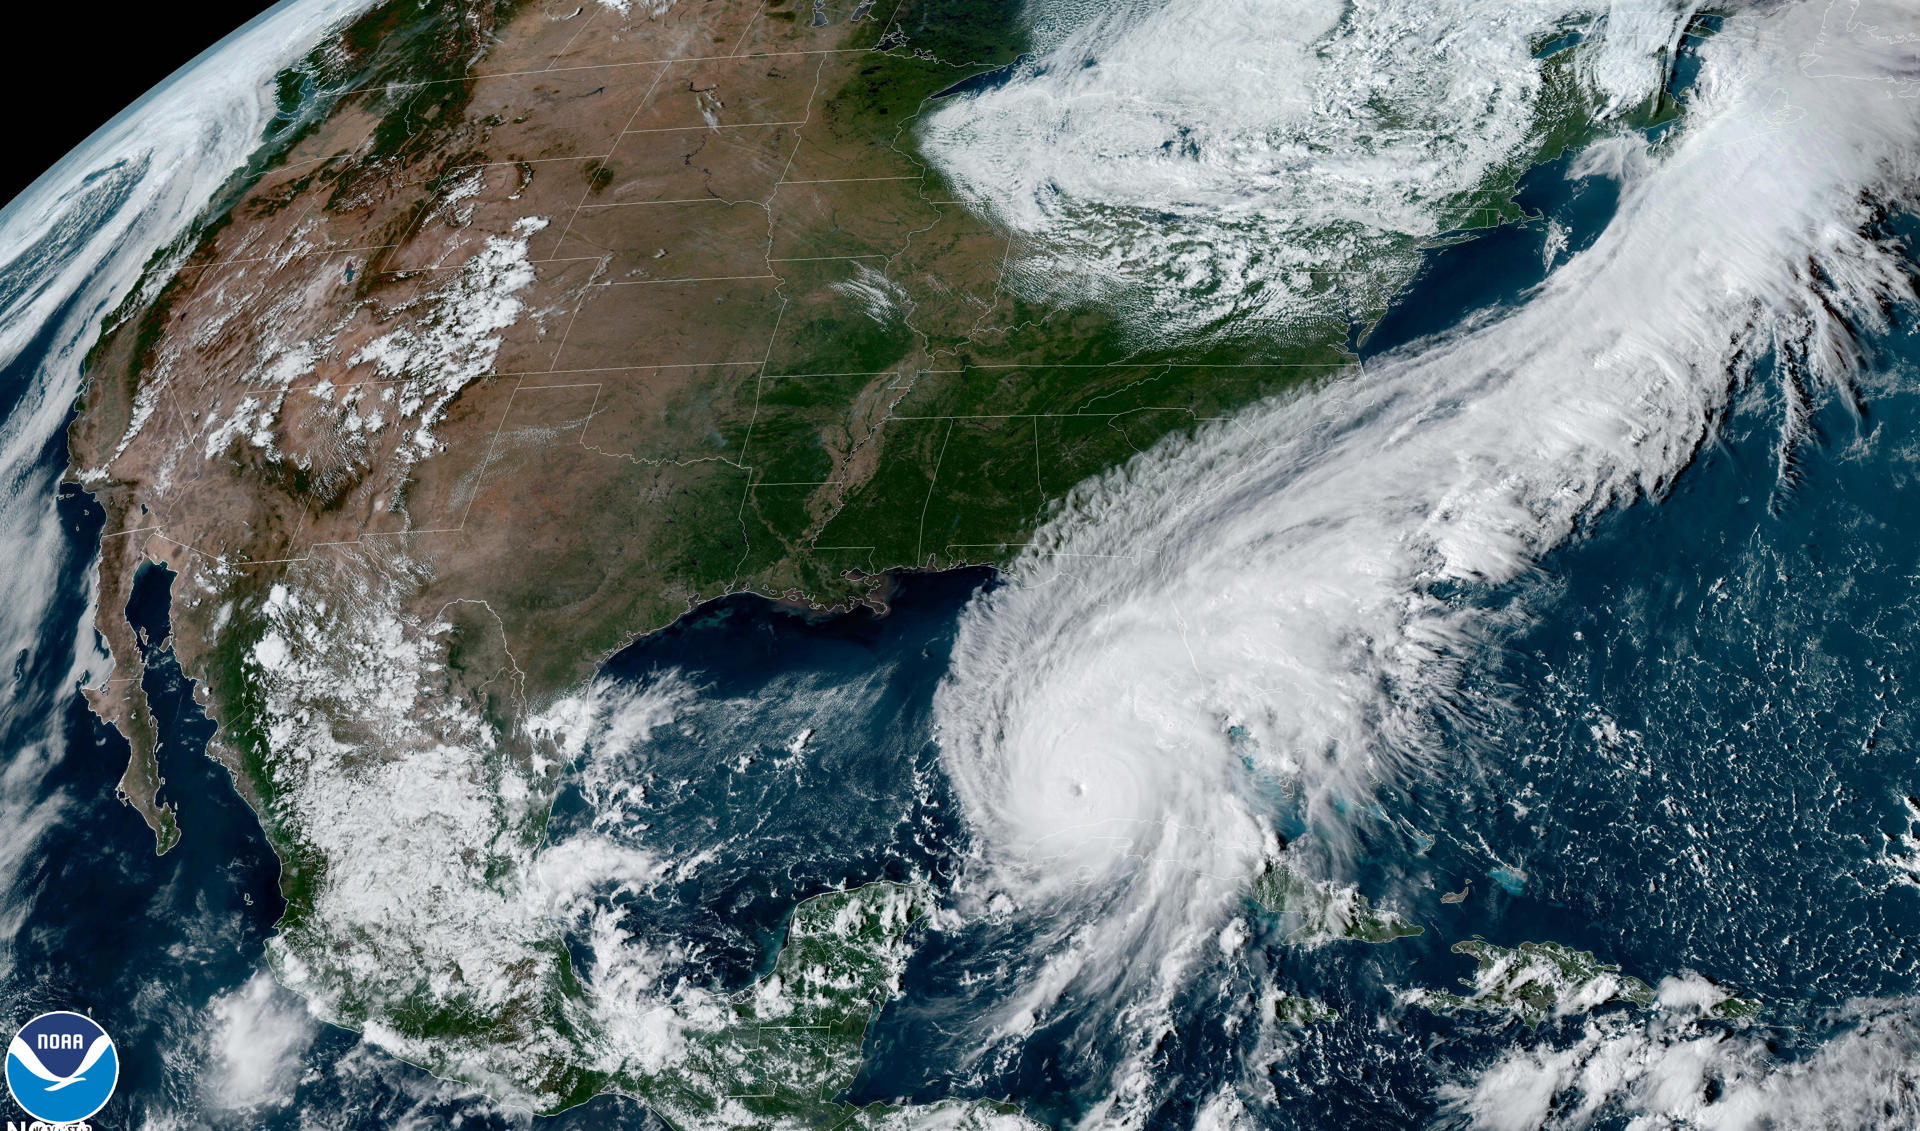 Fotografía cedida por la Oficina Nacional de Administración Oceánica y Atmosférica (NOAA) donde se aprecia al huracán Ian visto desde el satélite GOES-East de esta agencia estadounidense, el 27 de septiembre de 2022. EFE/NOAA